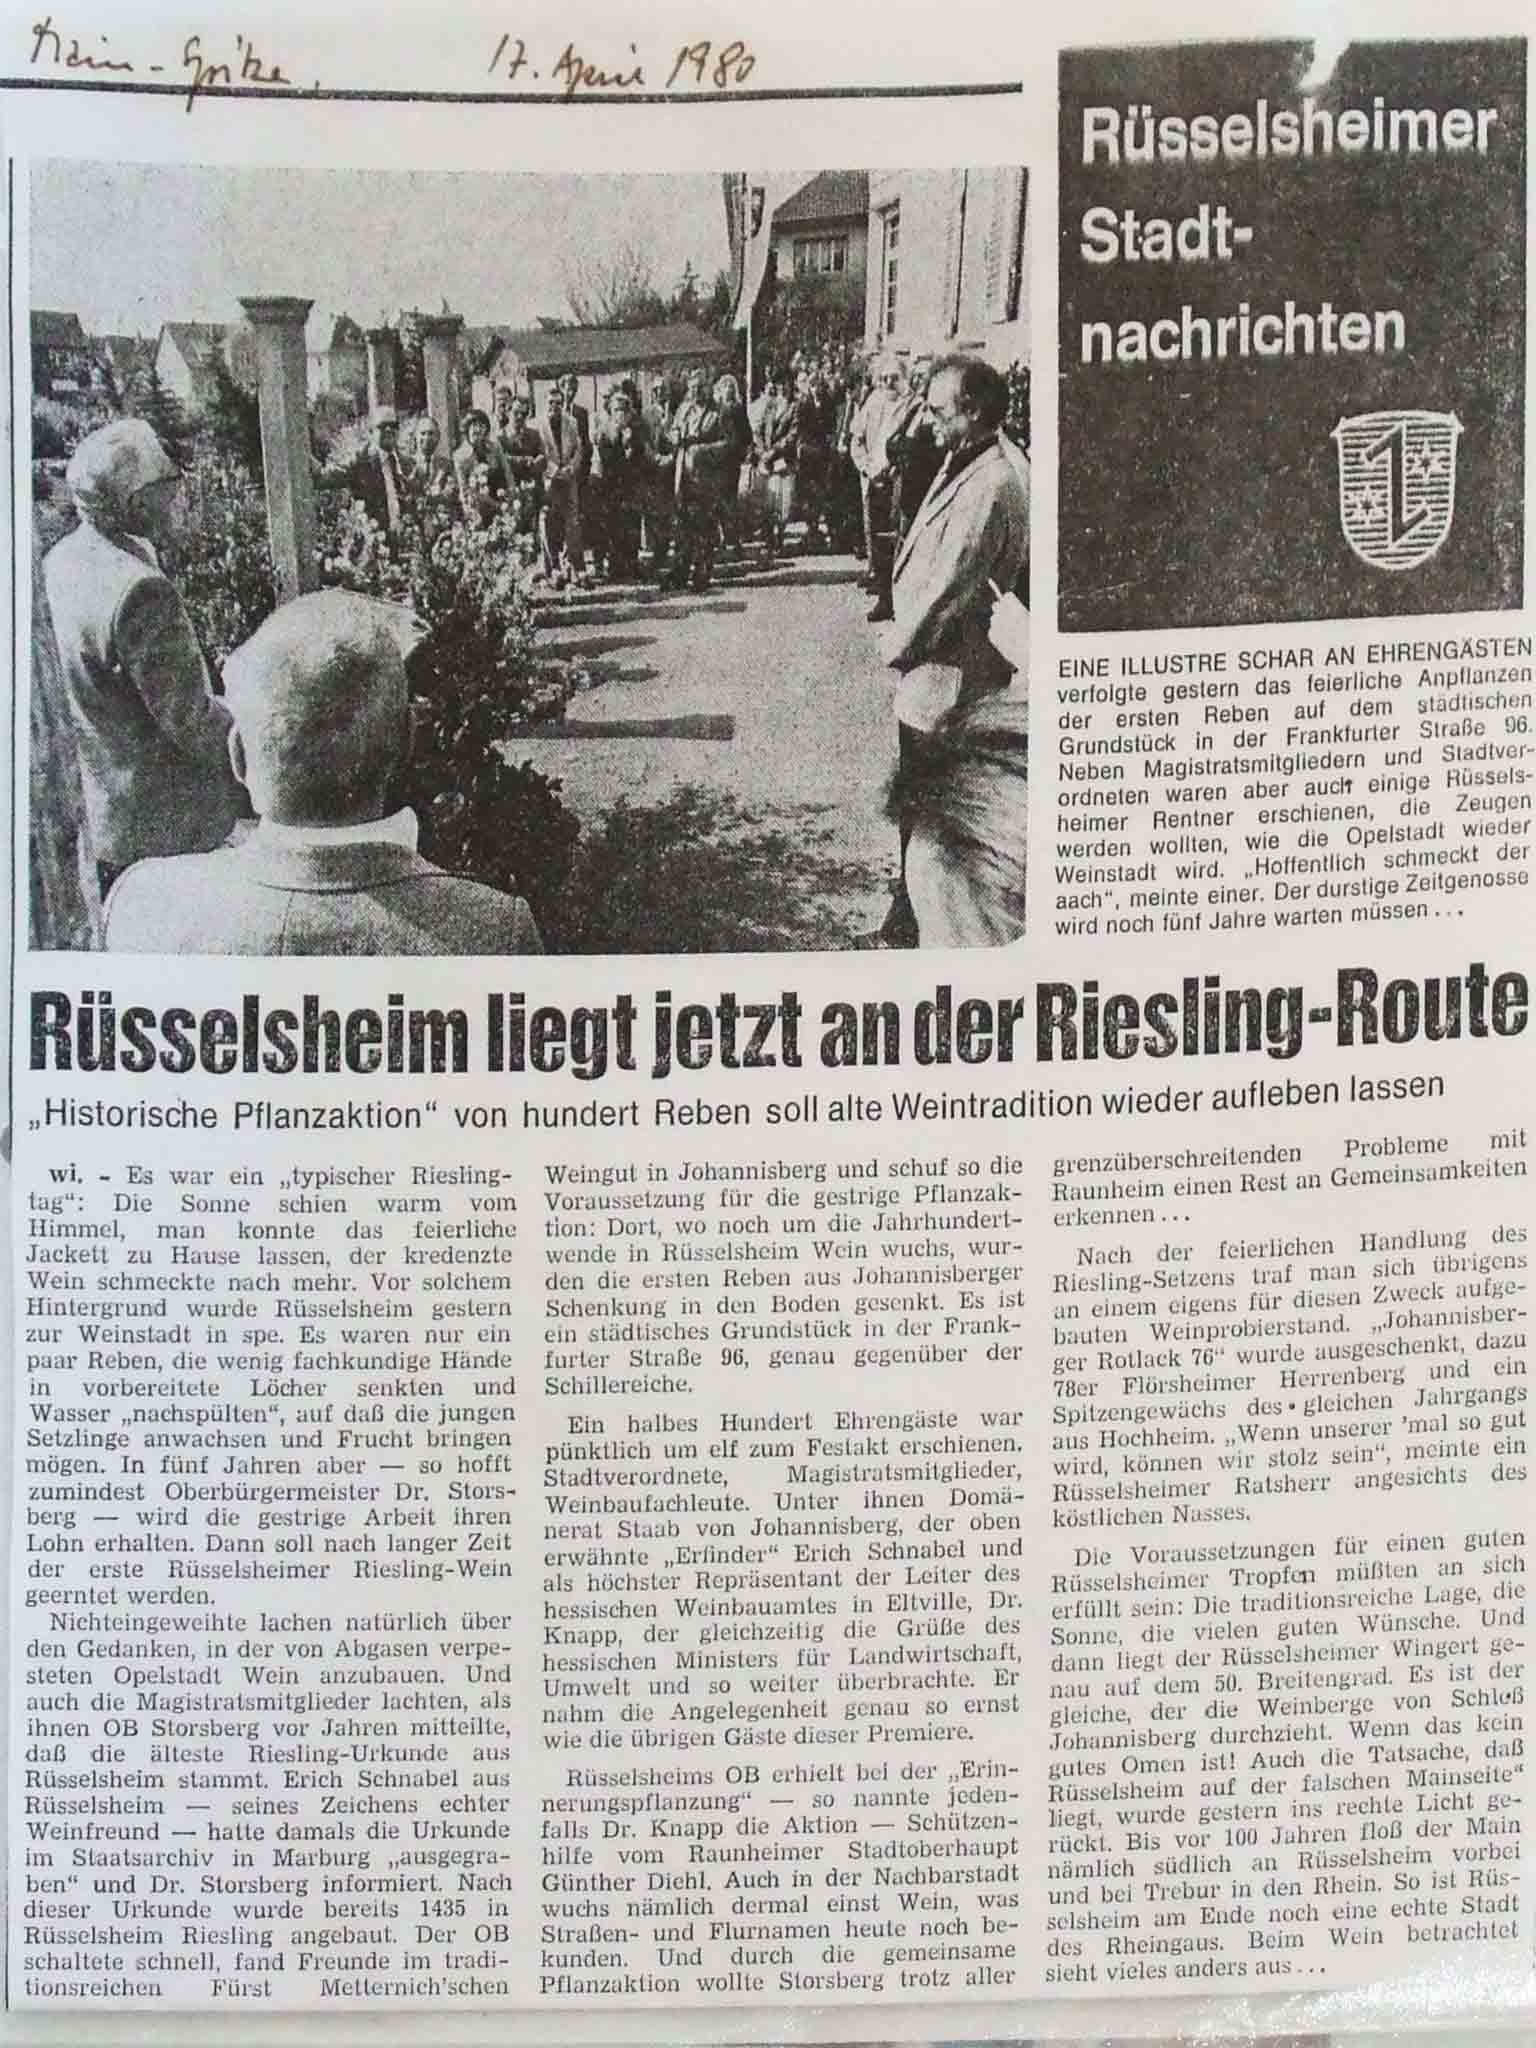 Beitrag der Rüsselsheimer Stadtnachrichten